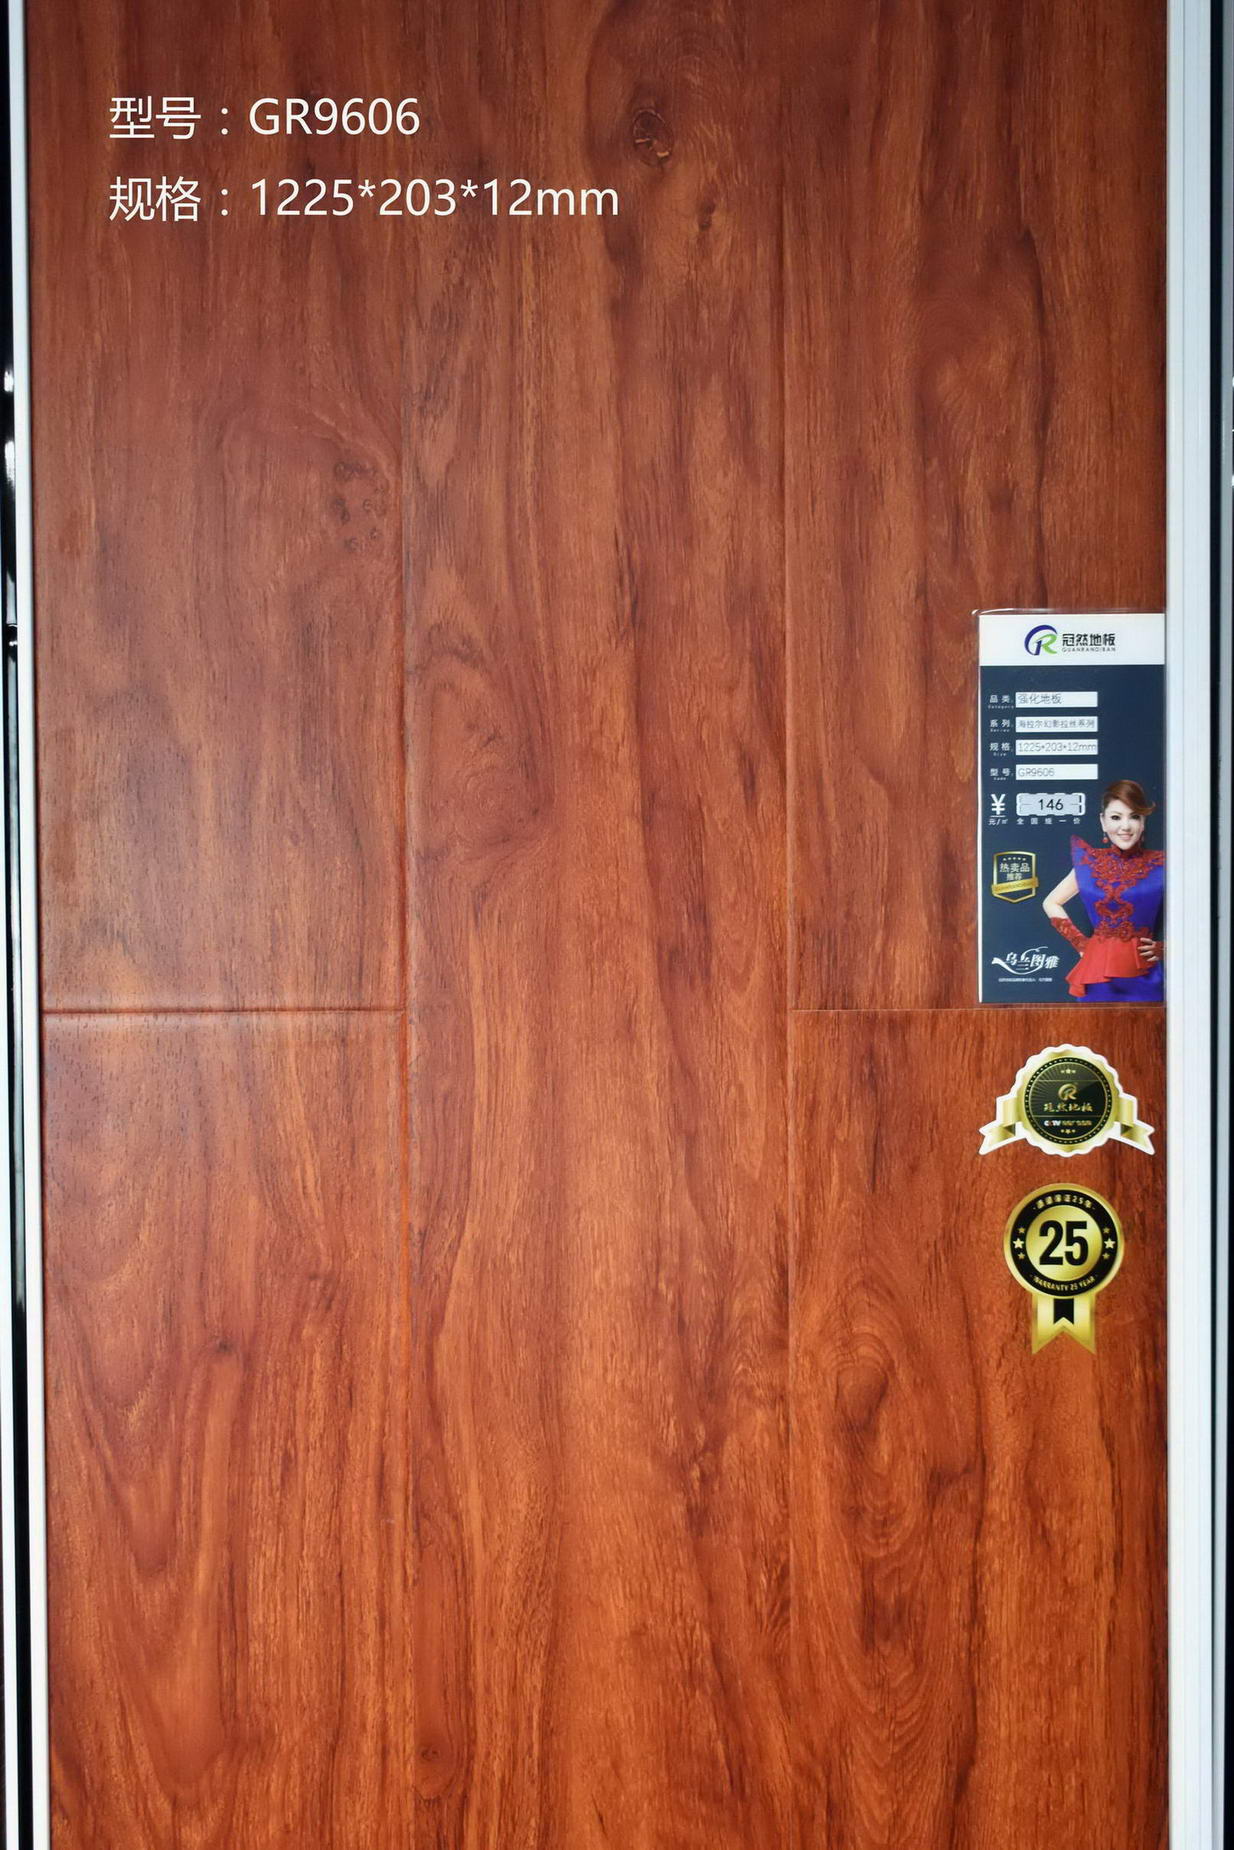 高清耐磨花色纸 海拉尔幻影拉丝系列 E1级大豆环保用胶 强化复合地板 绿色选材 冠然地板1